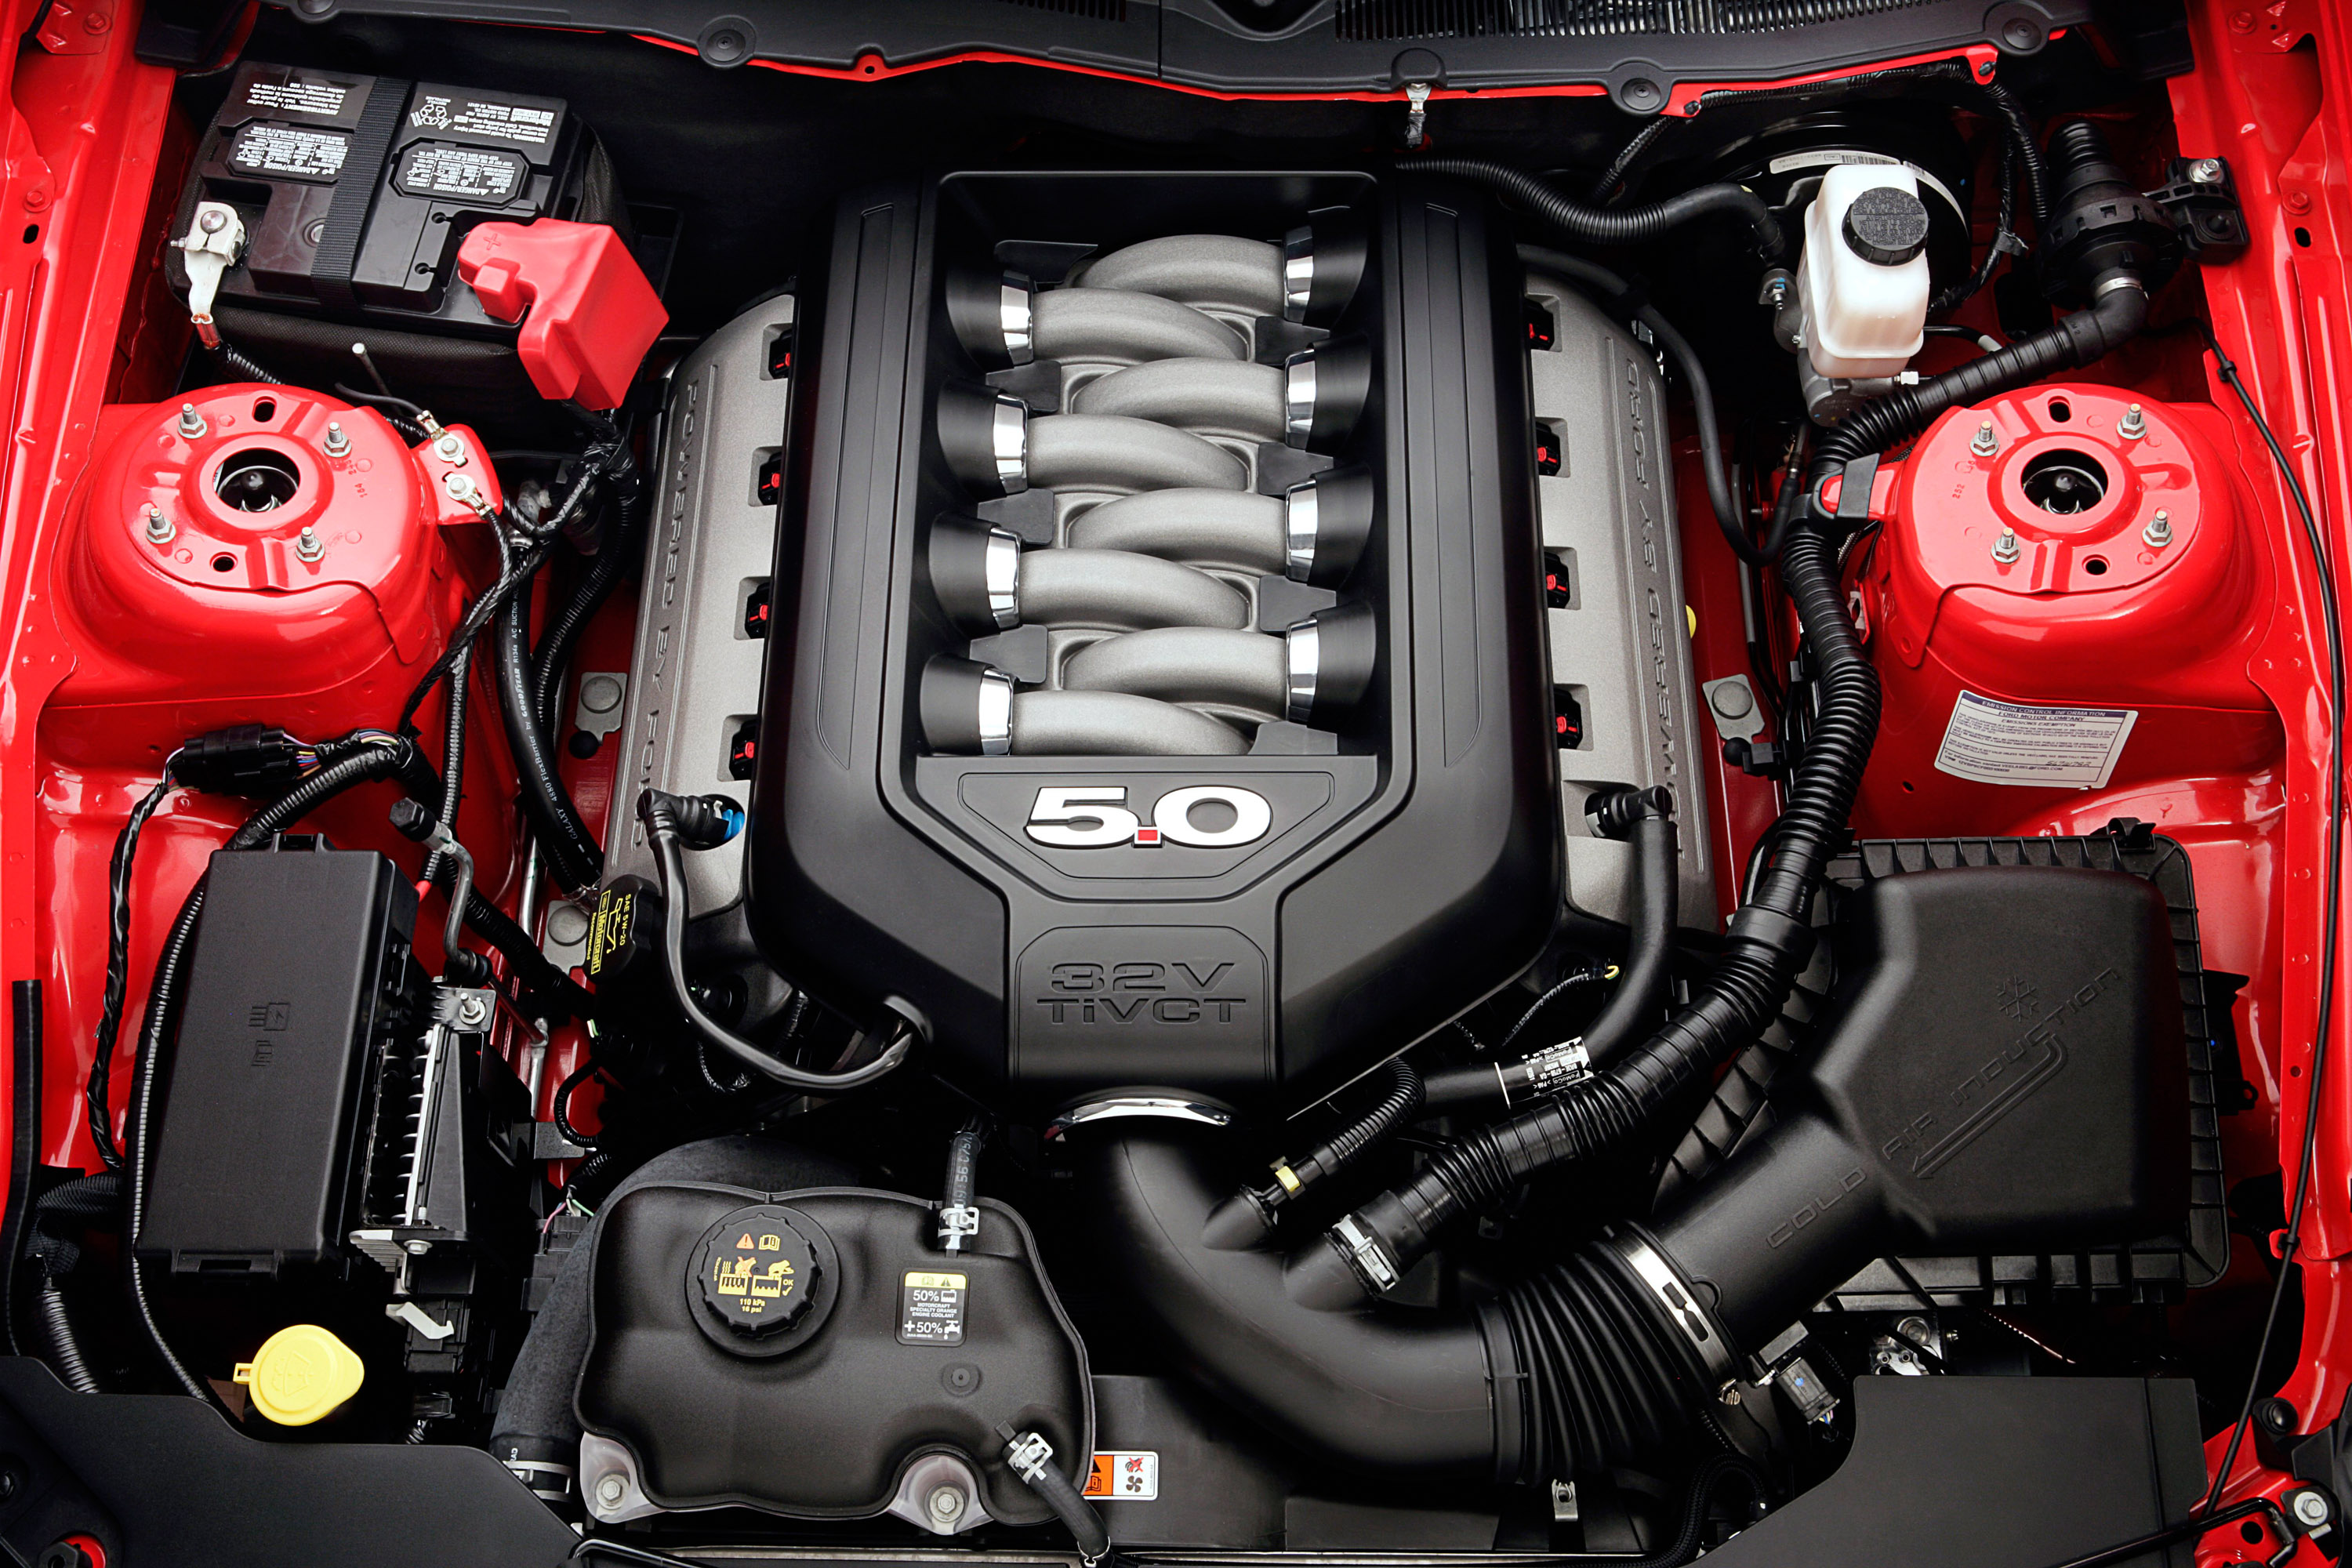 Двигатель на автомобиле является. Форд Мустанг v8. Форд Мустанг v8 мотор. Двигатель Форд Мустанг 5.0. Двигатель Мустанга v8.